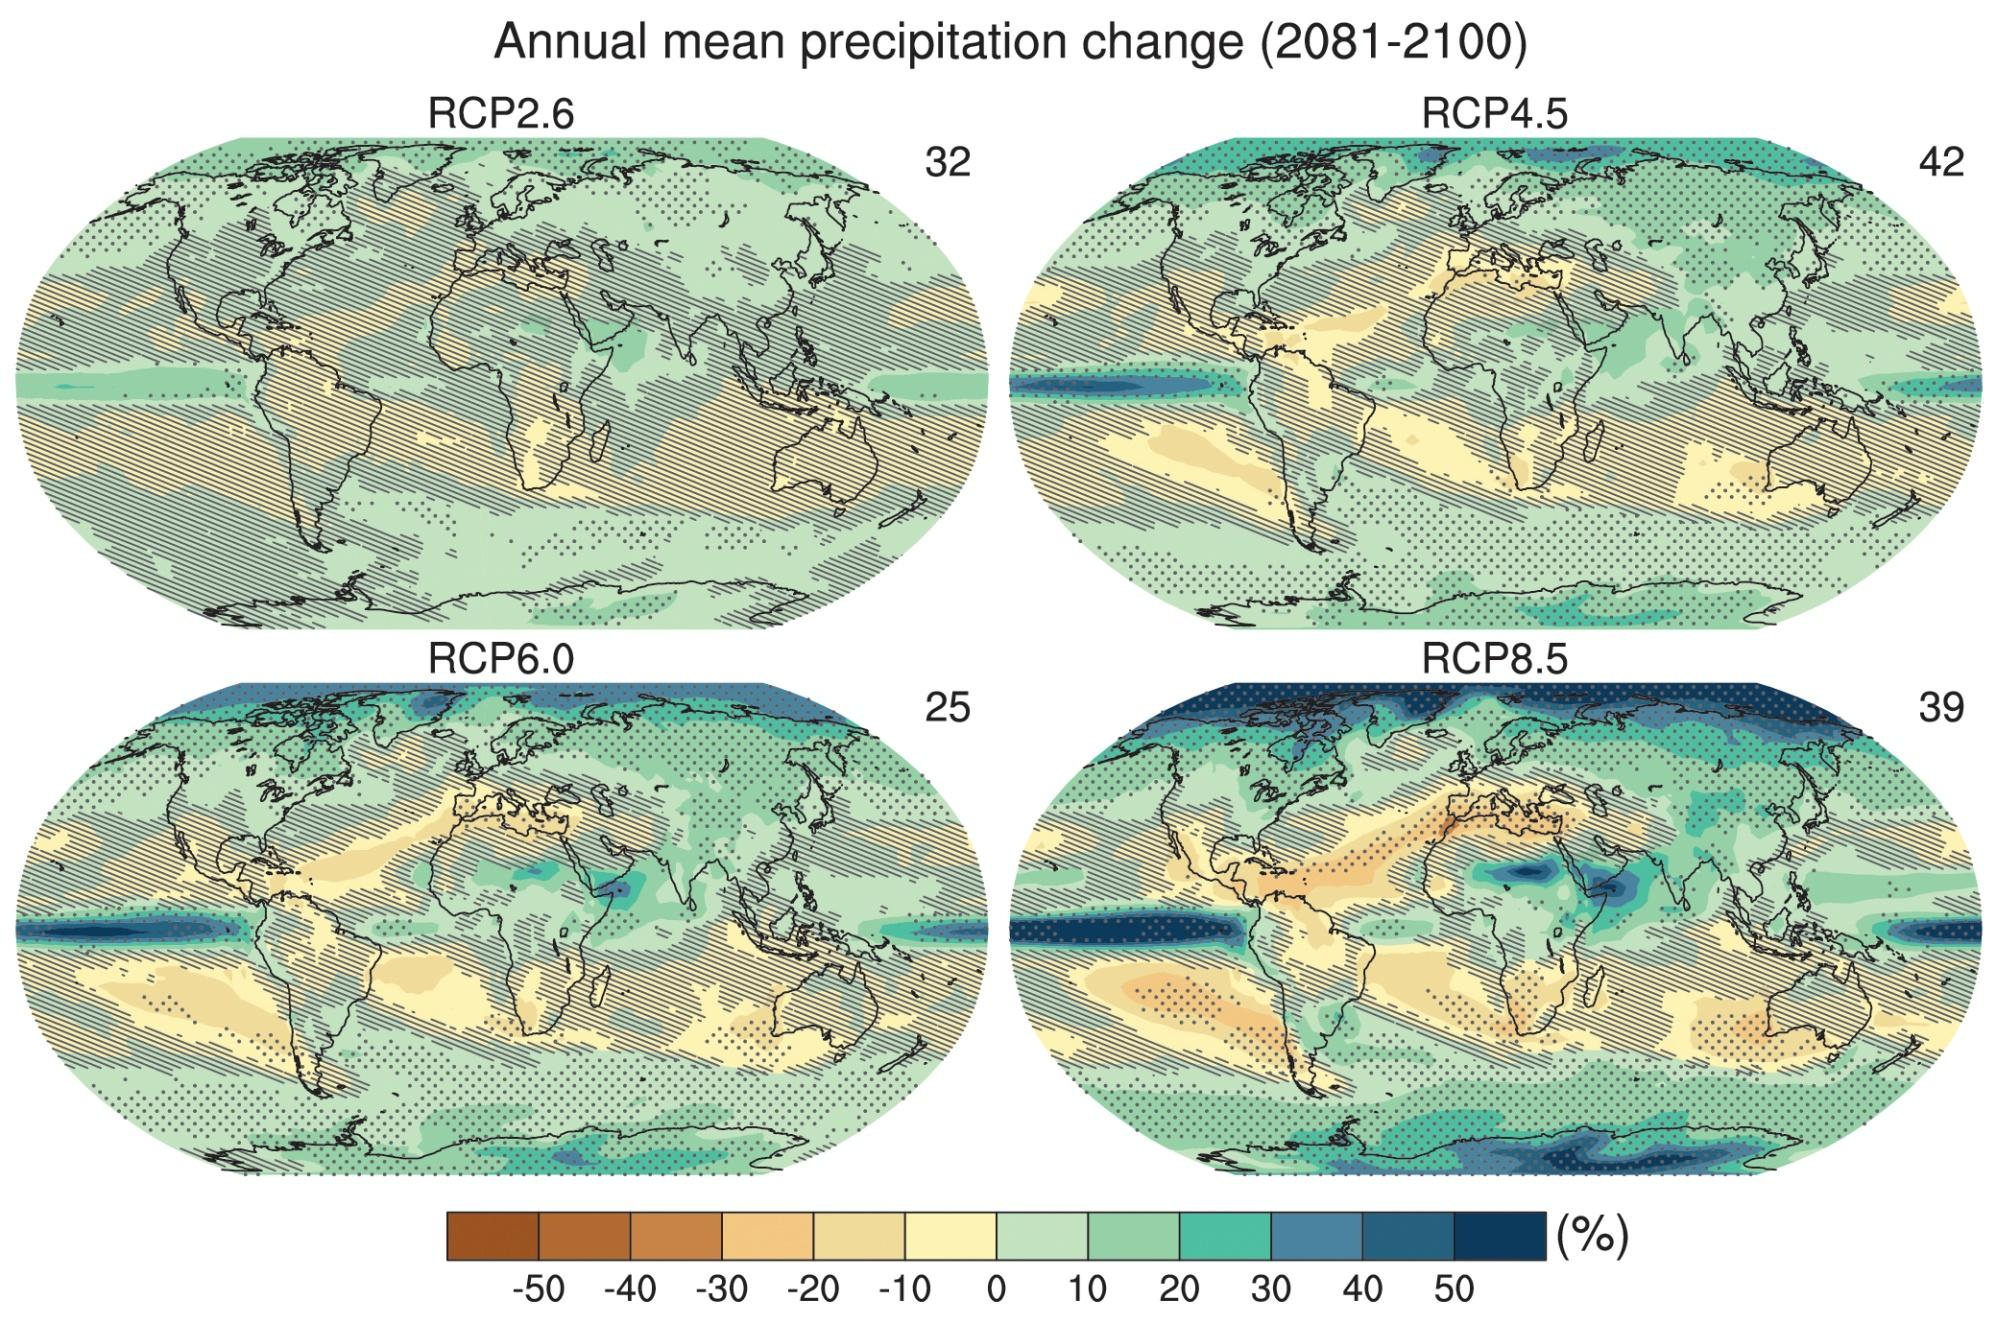 Σχετικές αλλαγές στην βροχόπτωση (σε ποσοστό) για την περίοδο 2081-2100, σχετικά με την περίοδο 1986-2005. Οι τιμές είναι μέσοι όροι από διάφορα AOGCMs βασισμένα σε 4 RCP σενάρια.